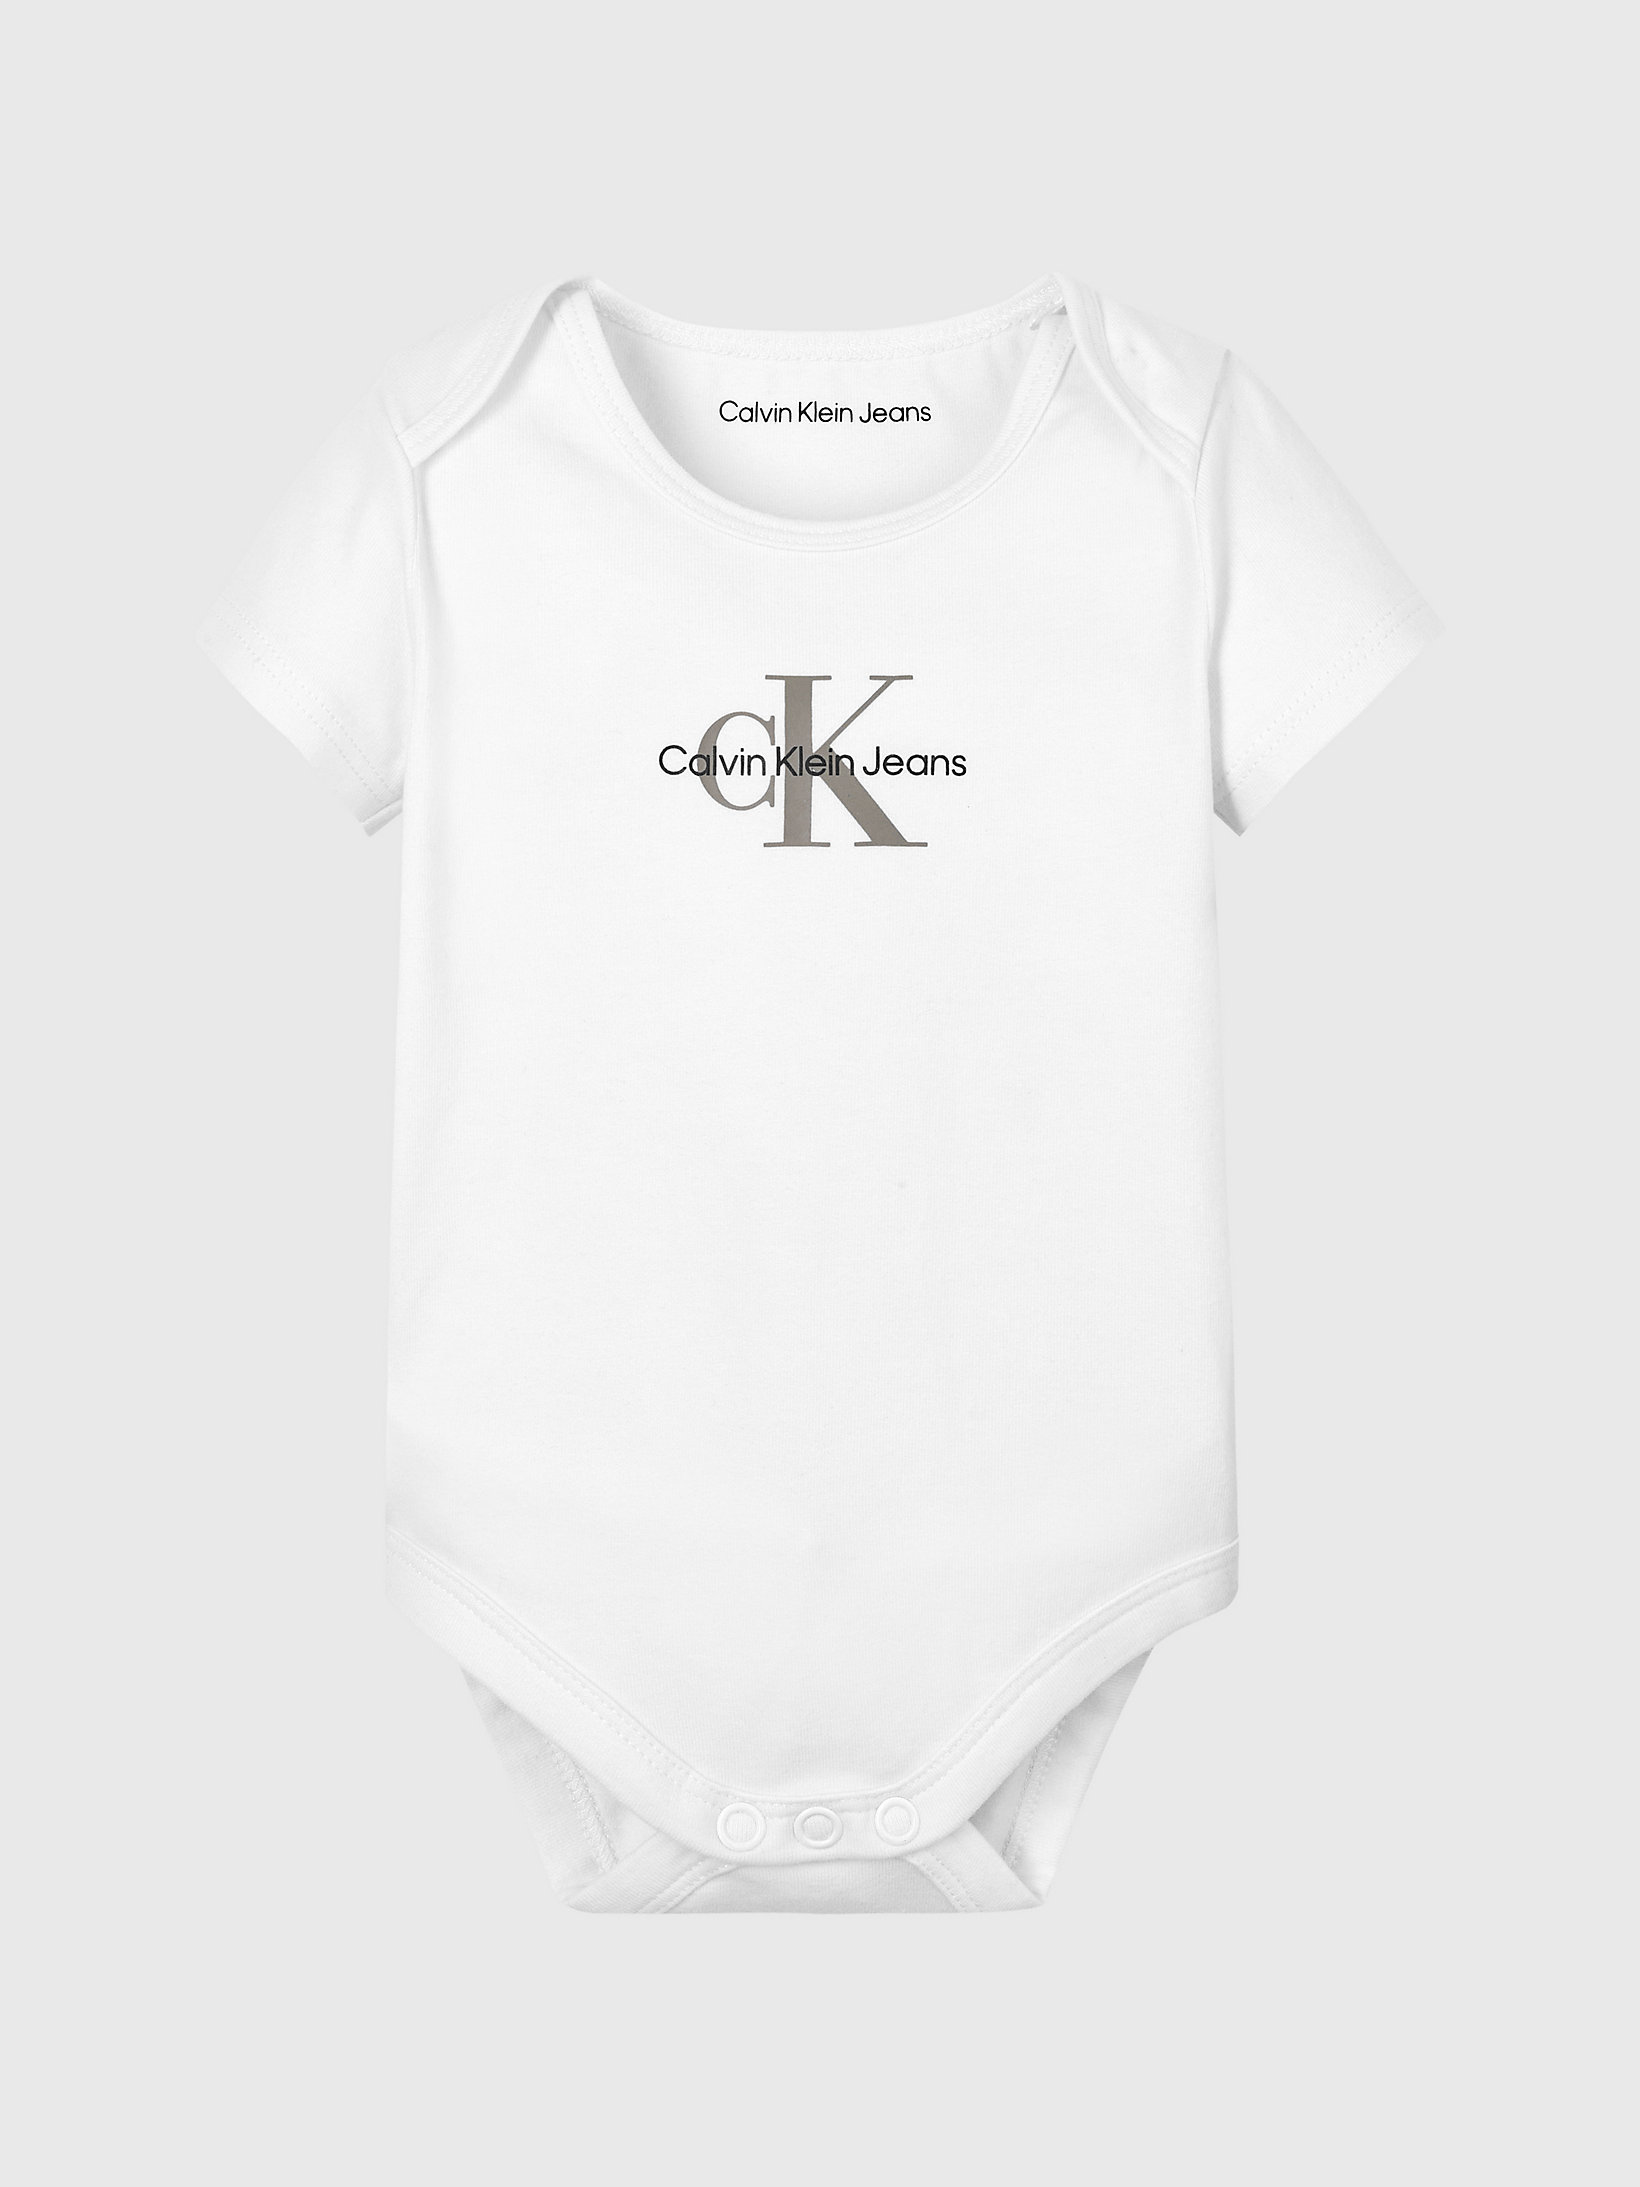 Bright White Newborn Logo Bodysuit undefined newborn Calvin Klein